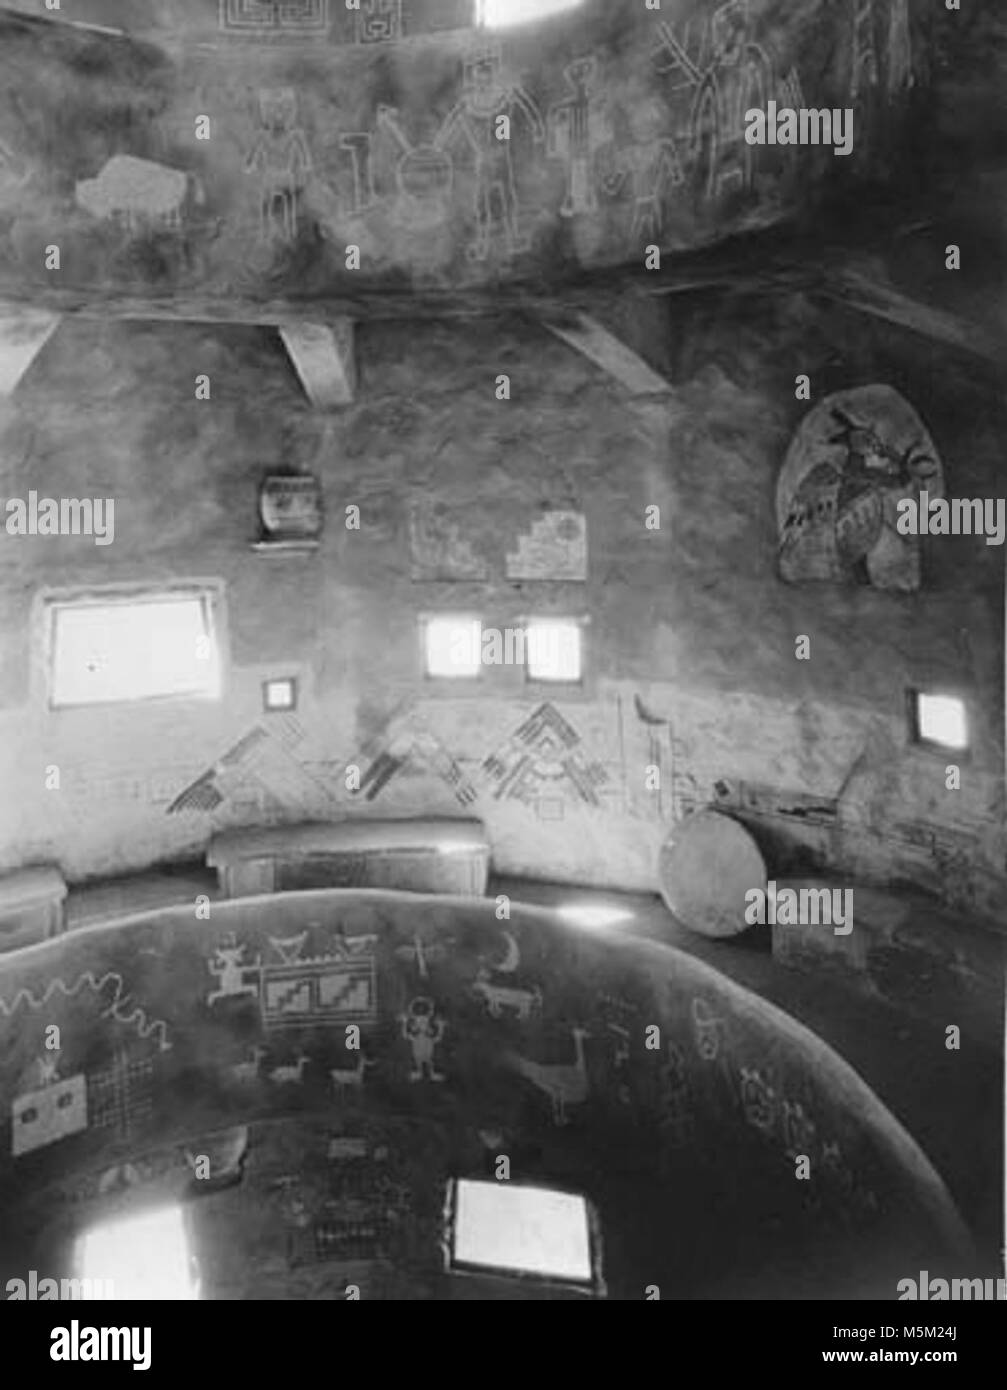 Historique Grand Canyon- Desert View Watchtower c intérieur . Desert view watchtower. Mur intérieur de la première galerie montrant les deux parapets. Vers 1932. Fred Harvey Co. Grca 15959. Banque D'Images